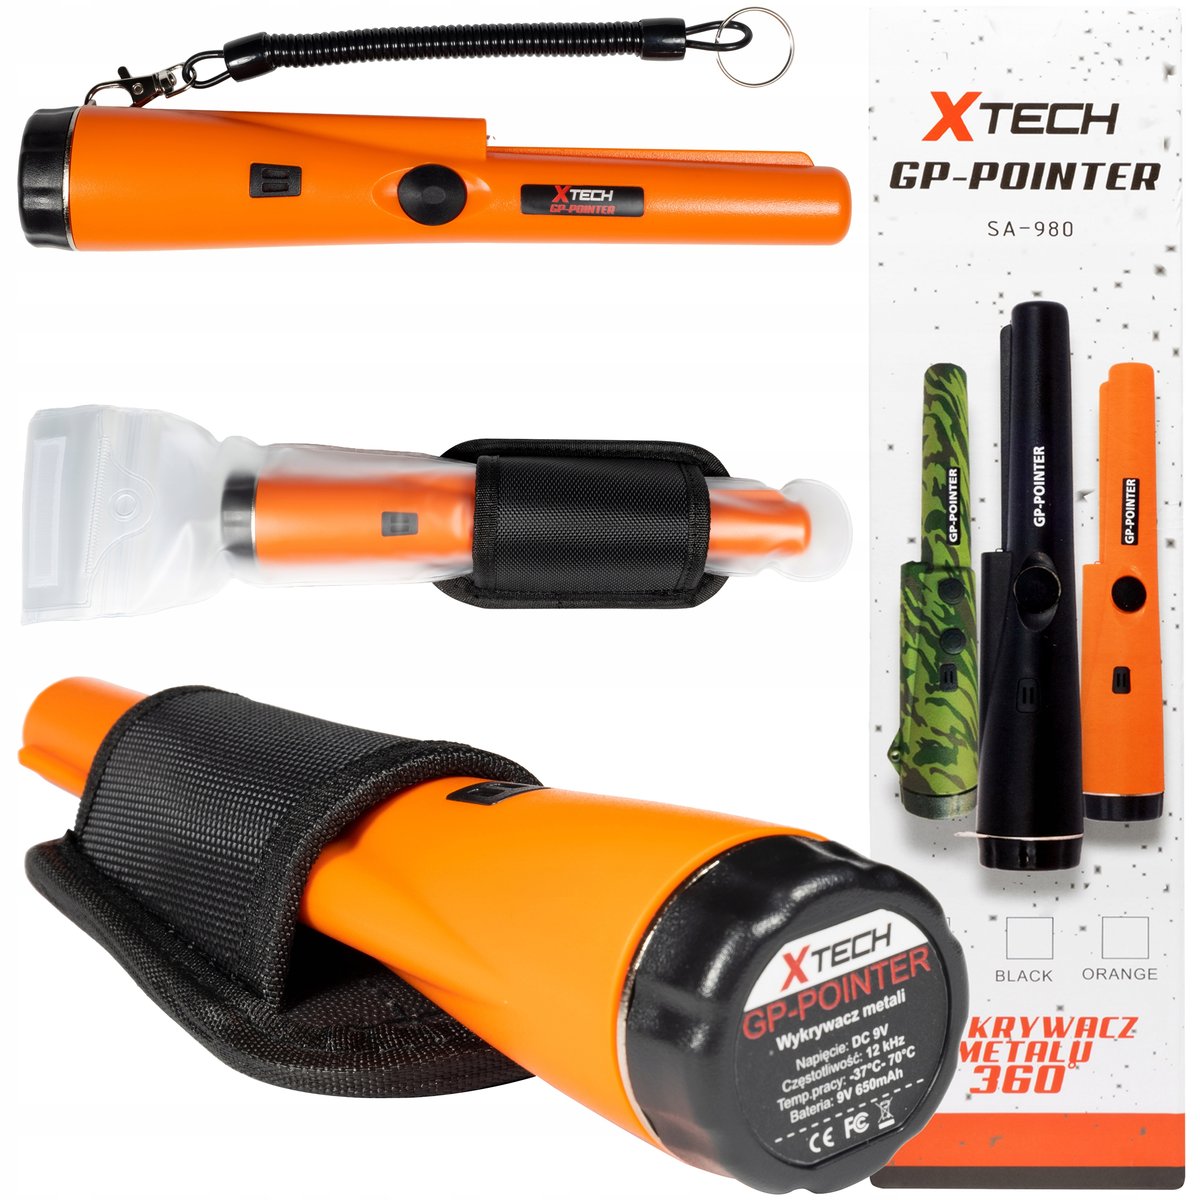 Wykrywacz Metalu Xtech Gp-Pointer Pro Model Sa-980 (Pomarańczowy)